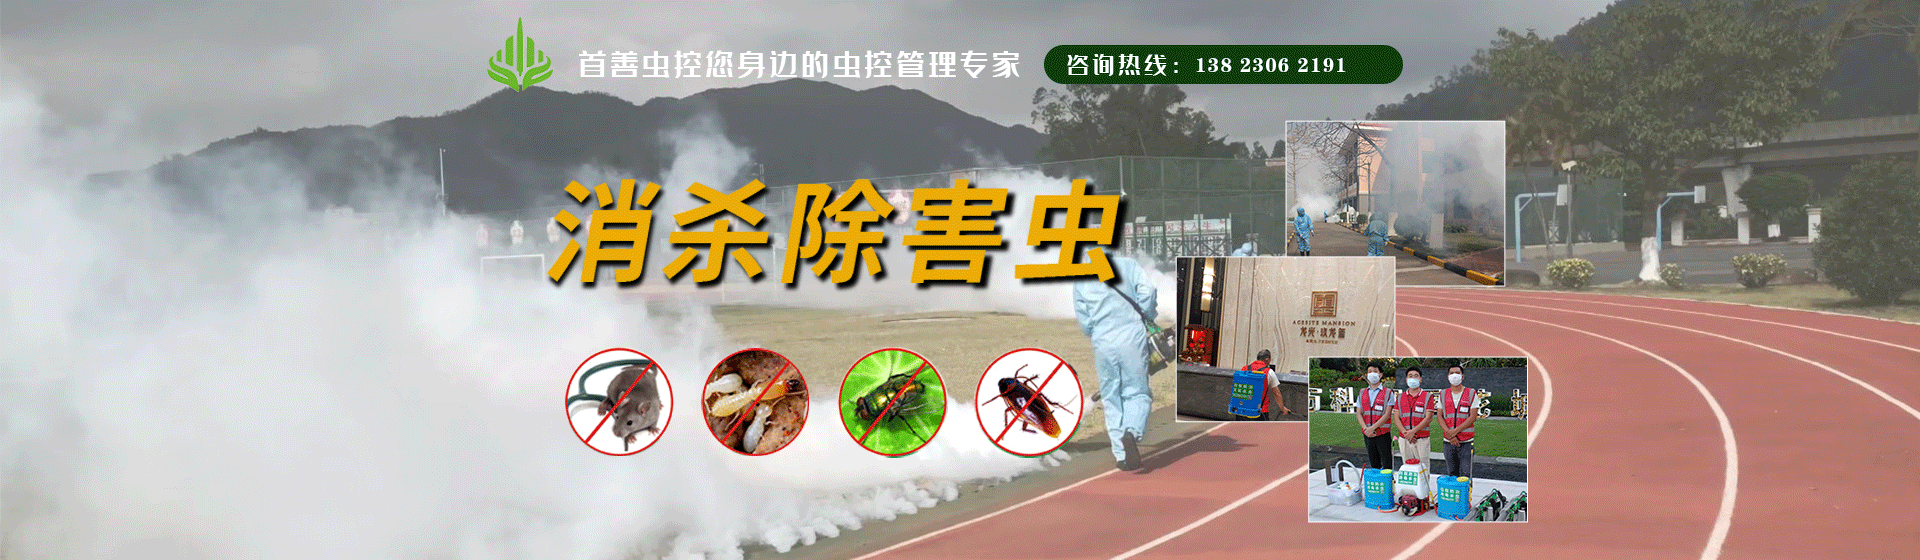 杀虫服务 - 杀虫服务 - 珠海市首善环境卫生服务有限公司